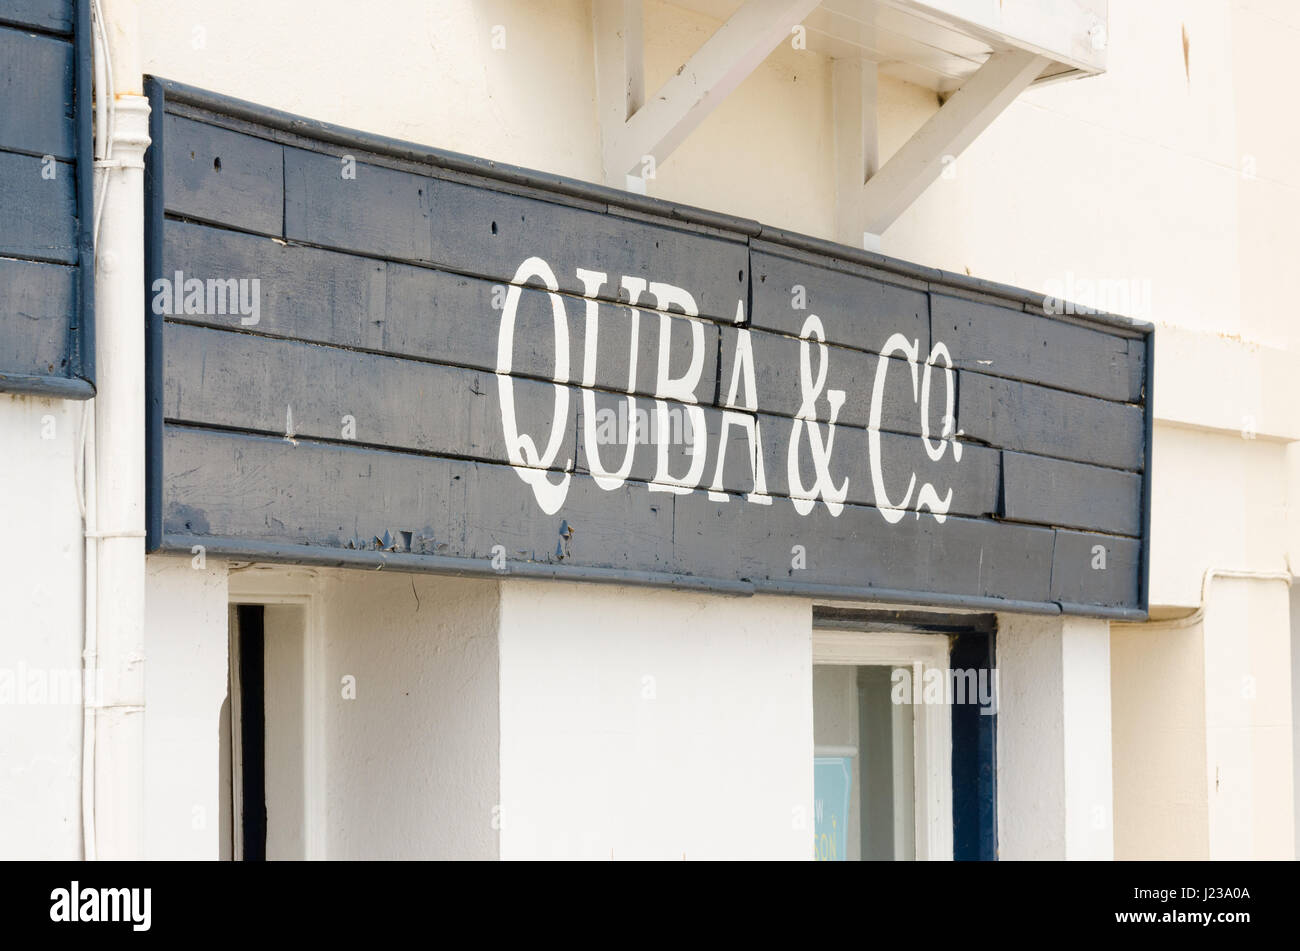 Quba & Co Bekleidungsgeschäft in Salcombe, Devon, die aus alten Segeln Segeln Jacken verkauft Stockfoto